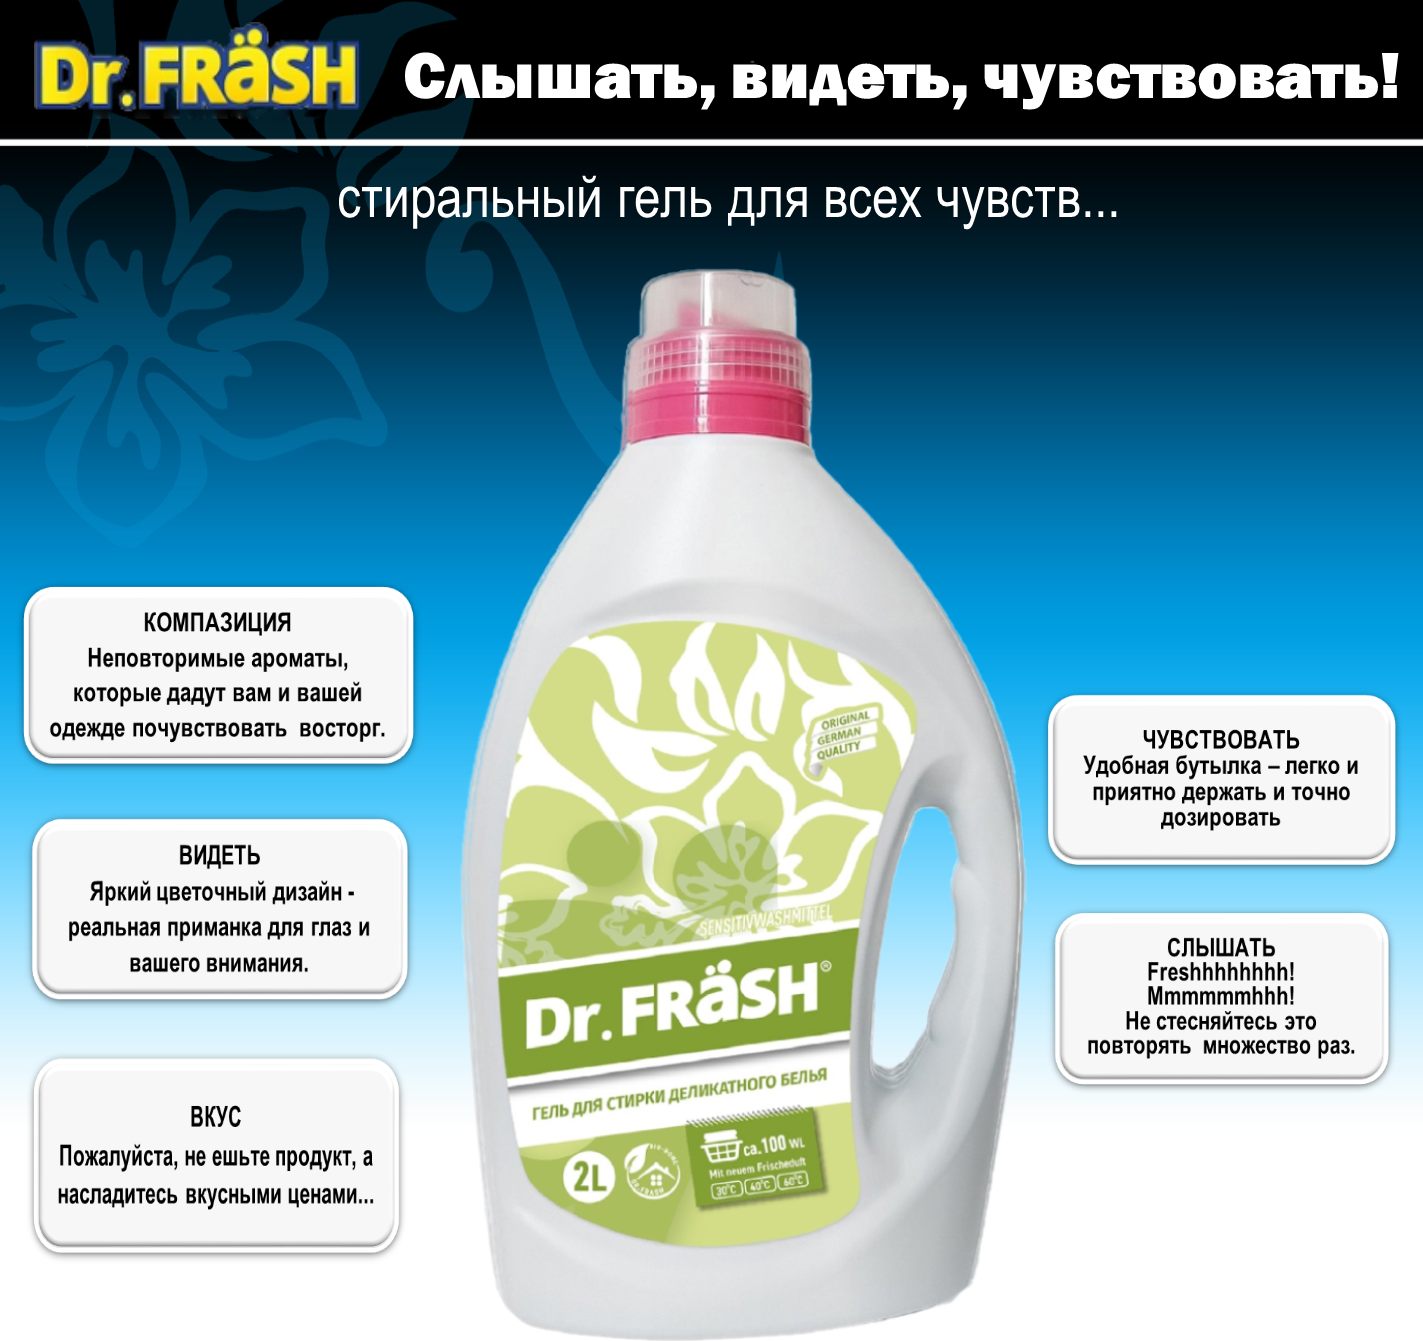 Dr.FRASH Гель для стирки цветного и деликатного белья Sensitiv 2л (100 стирок)